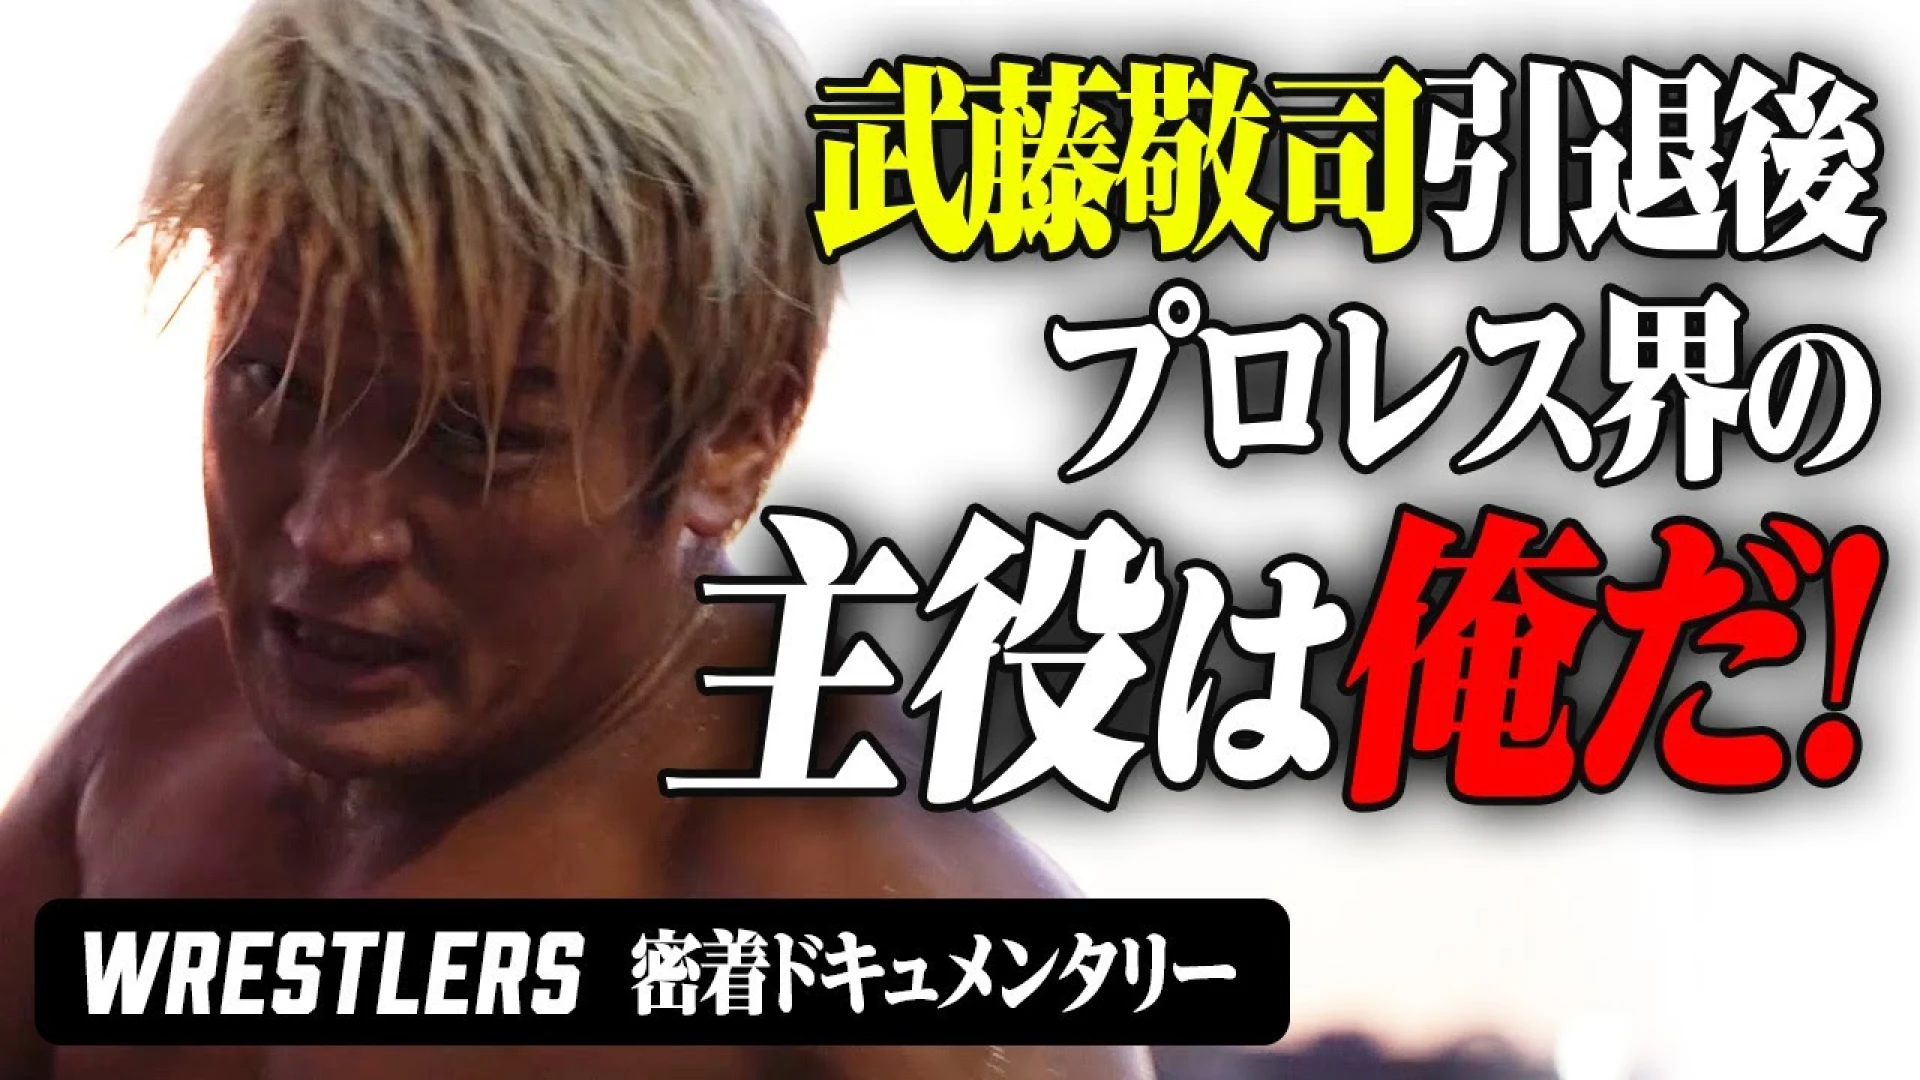 これは新日本プロレスVSノアじゃない。二人のプライドと人生を賭けたドラマ。密着ドキュメンタリー”WRESTLERS” 公開！